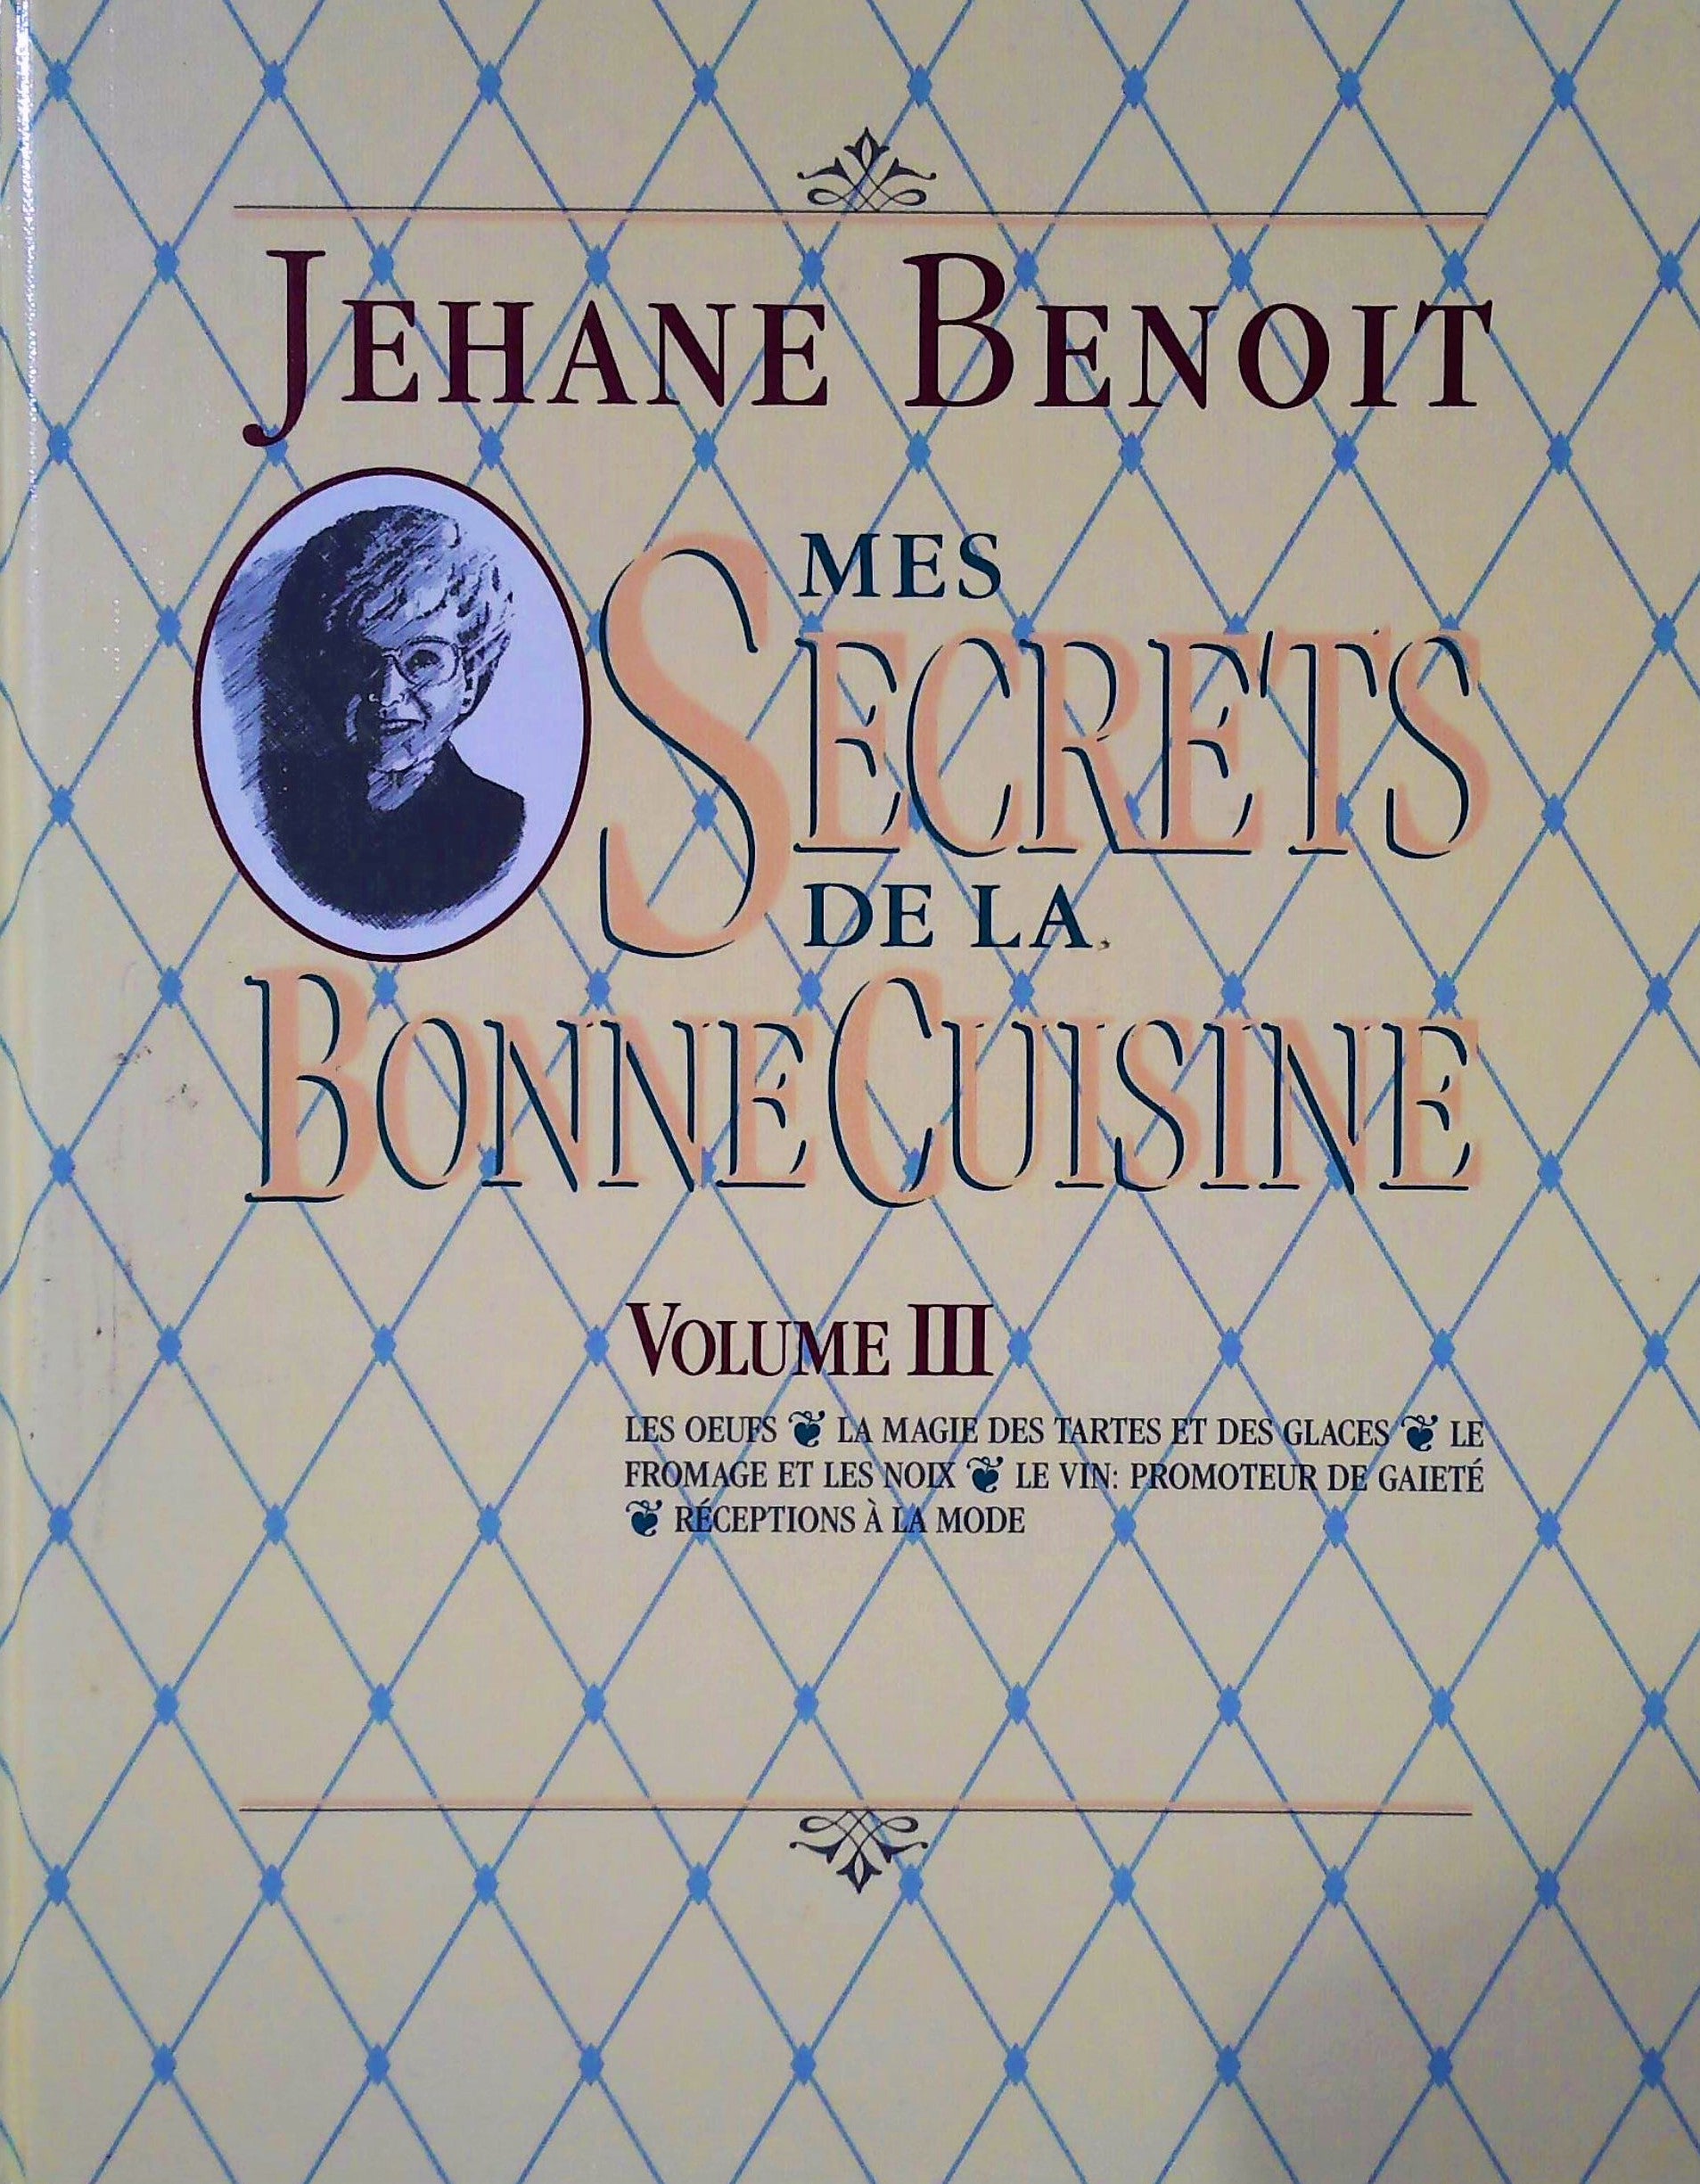 Livre ISBN 2762560438 Mes secret de la bonne cuisine volume 3 (Jehane Benoit)